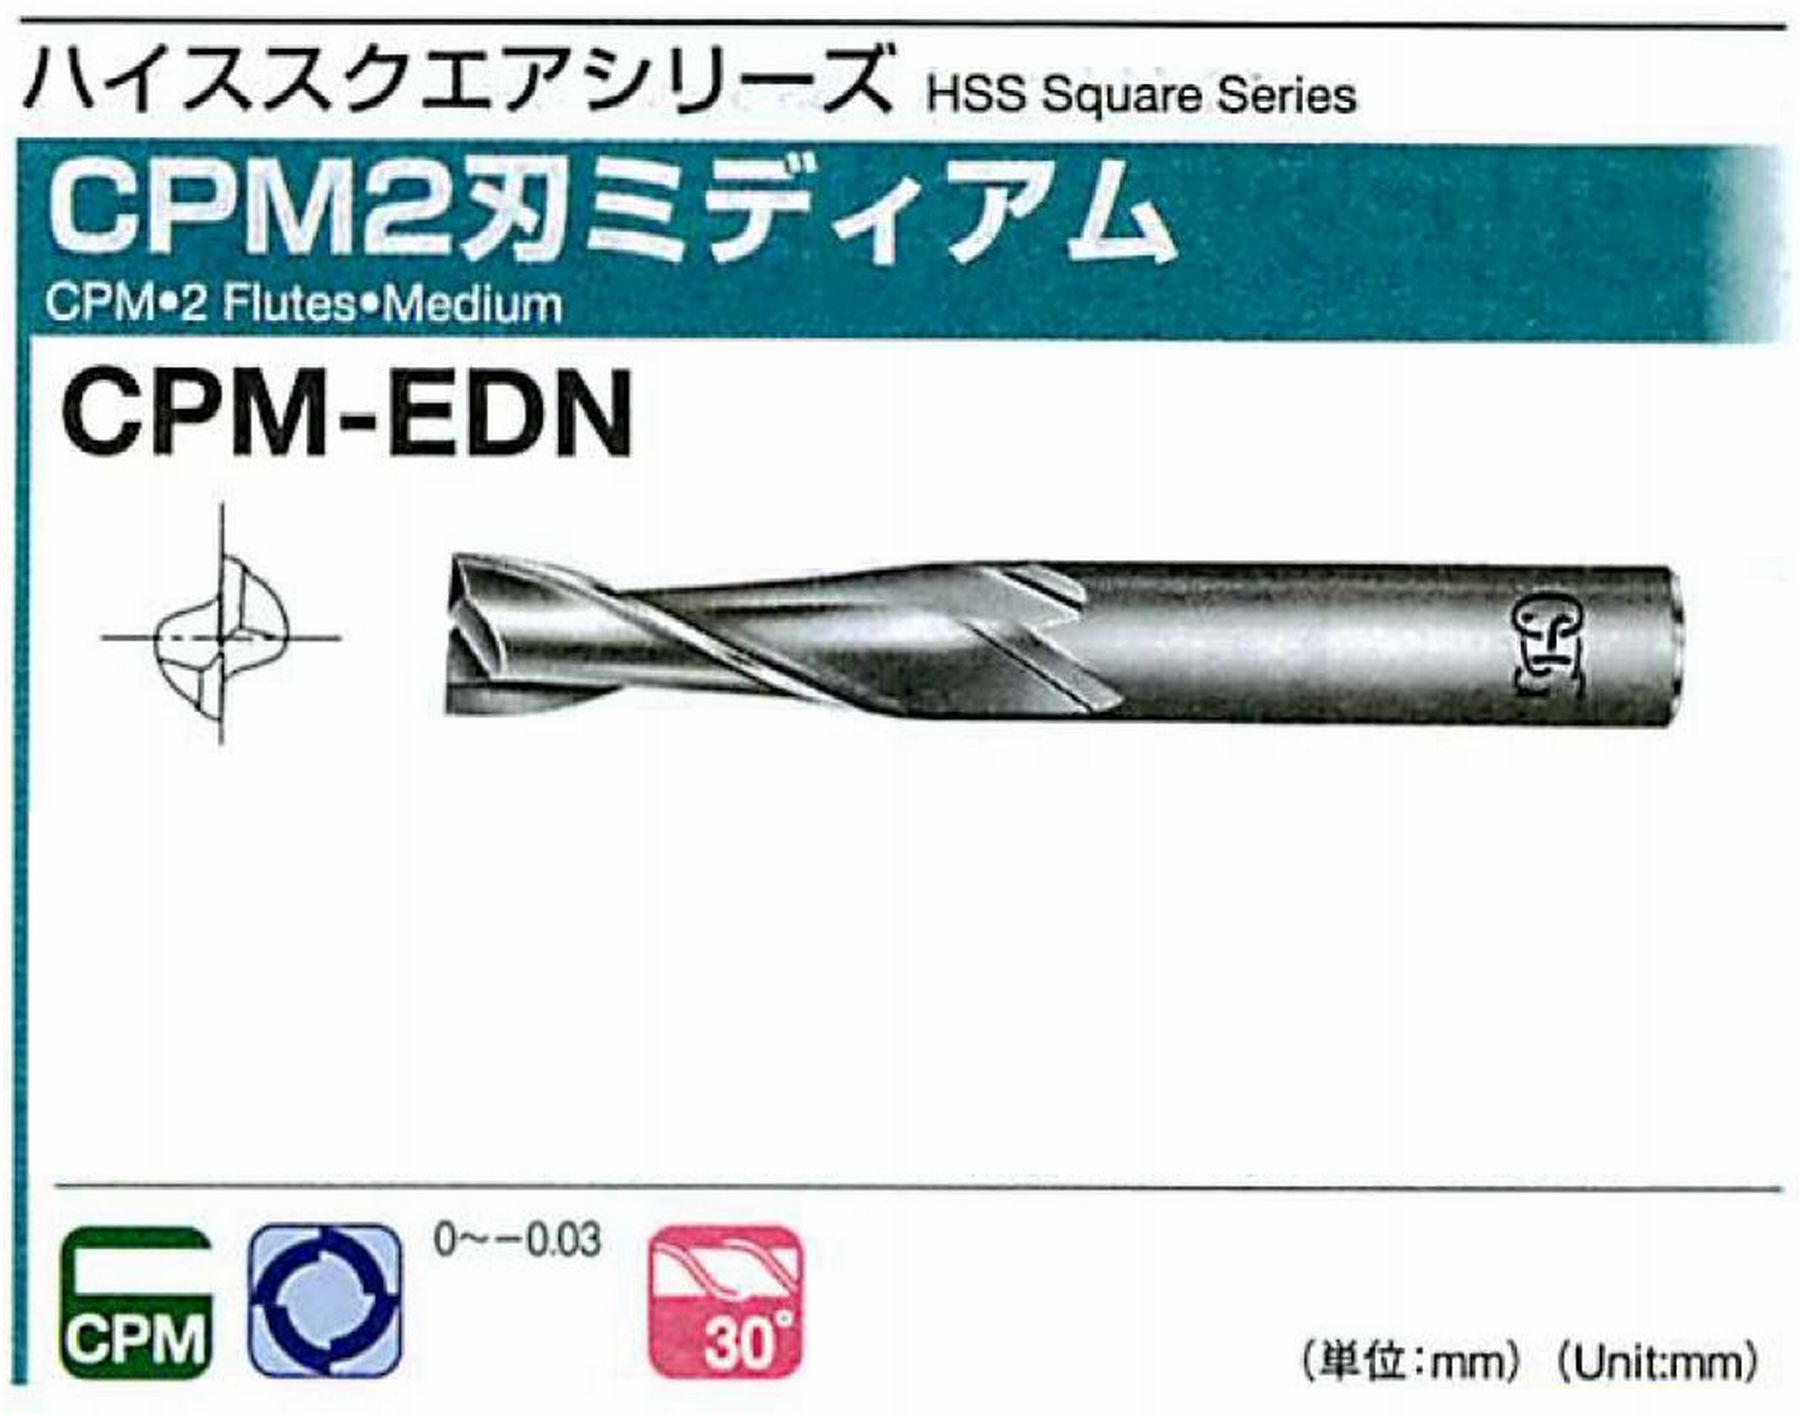 オーエスジー/OSG CPM2刃 ミディアム CPM-EDN 外径9.5 全長70 刃長25 シャンク径10mm